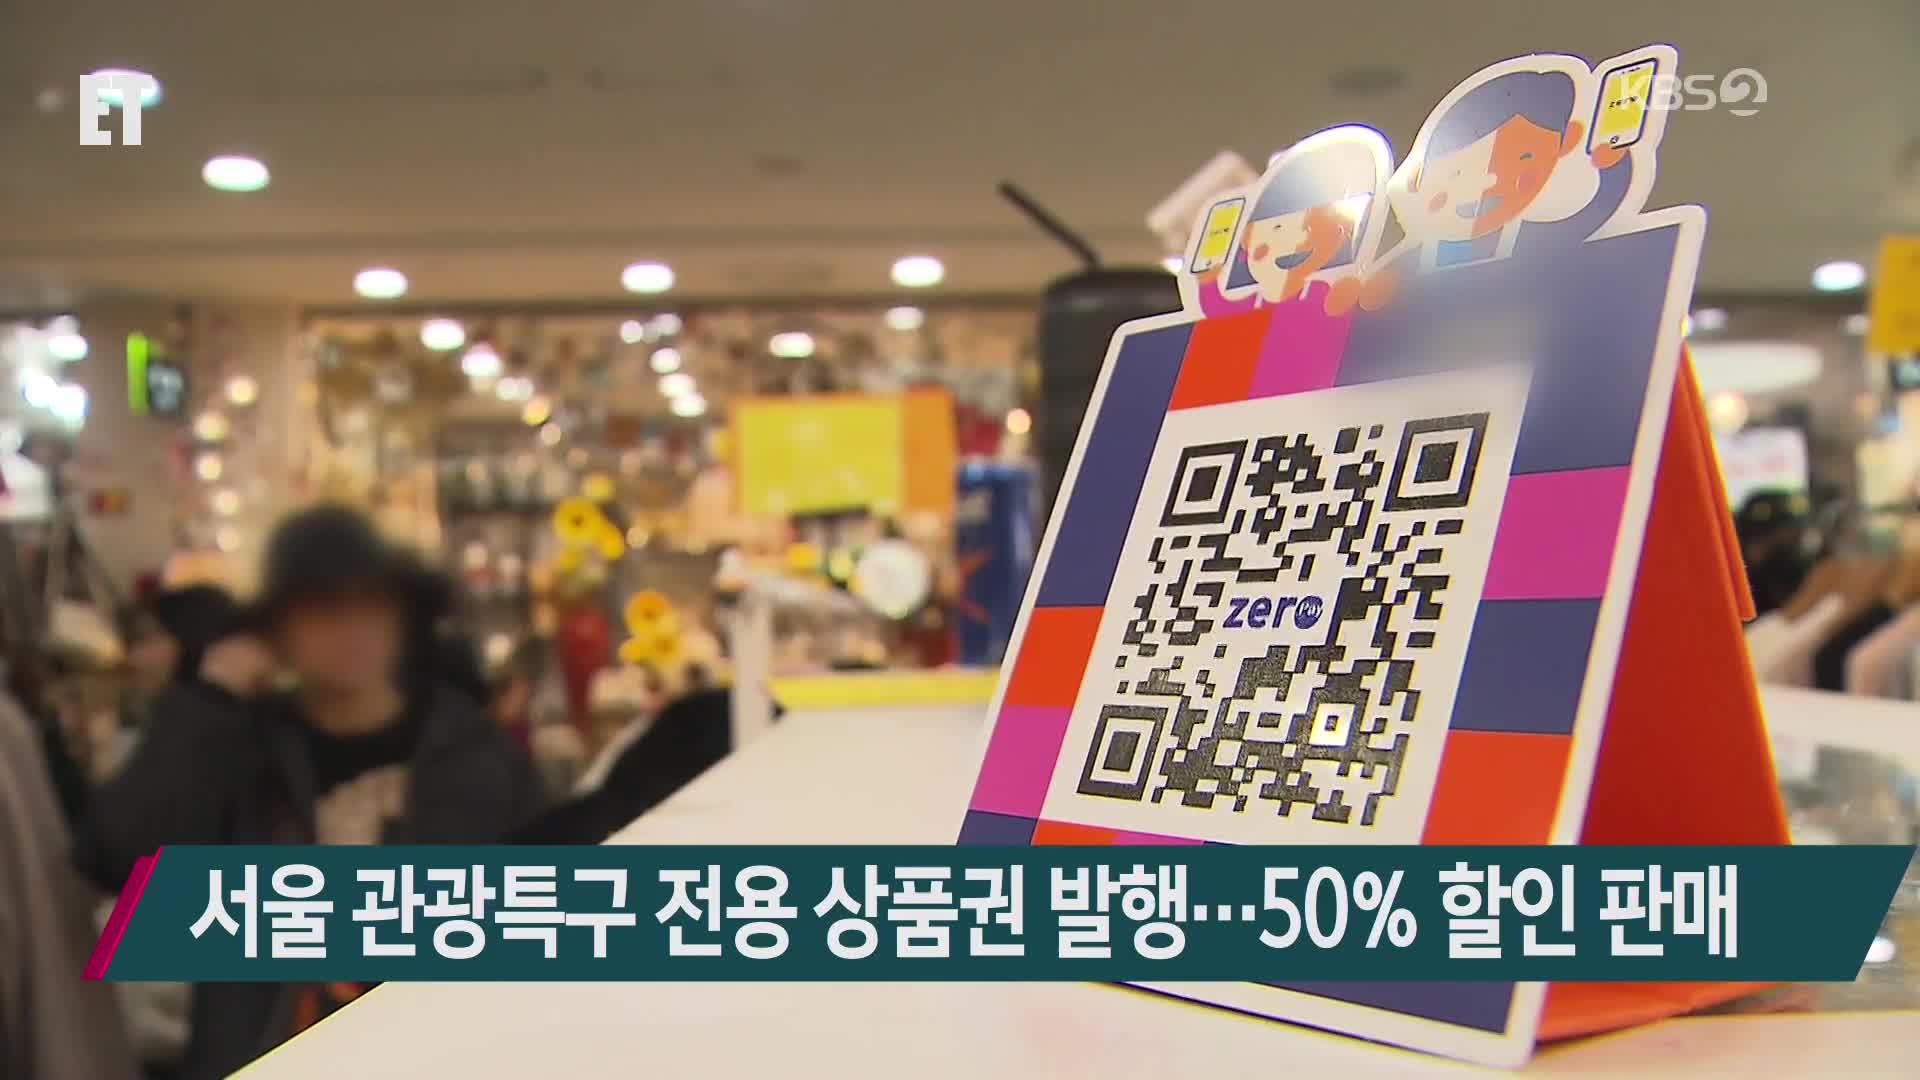 서울 관광특구 전용 상품권 발행…50% 할인 판매